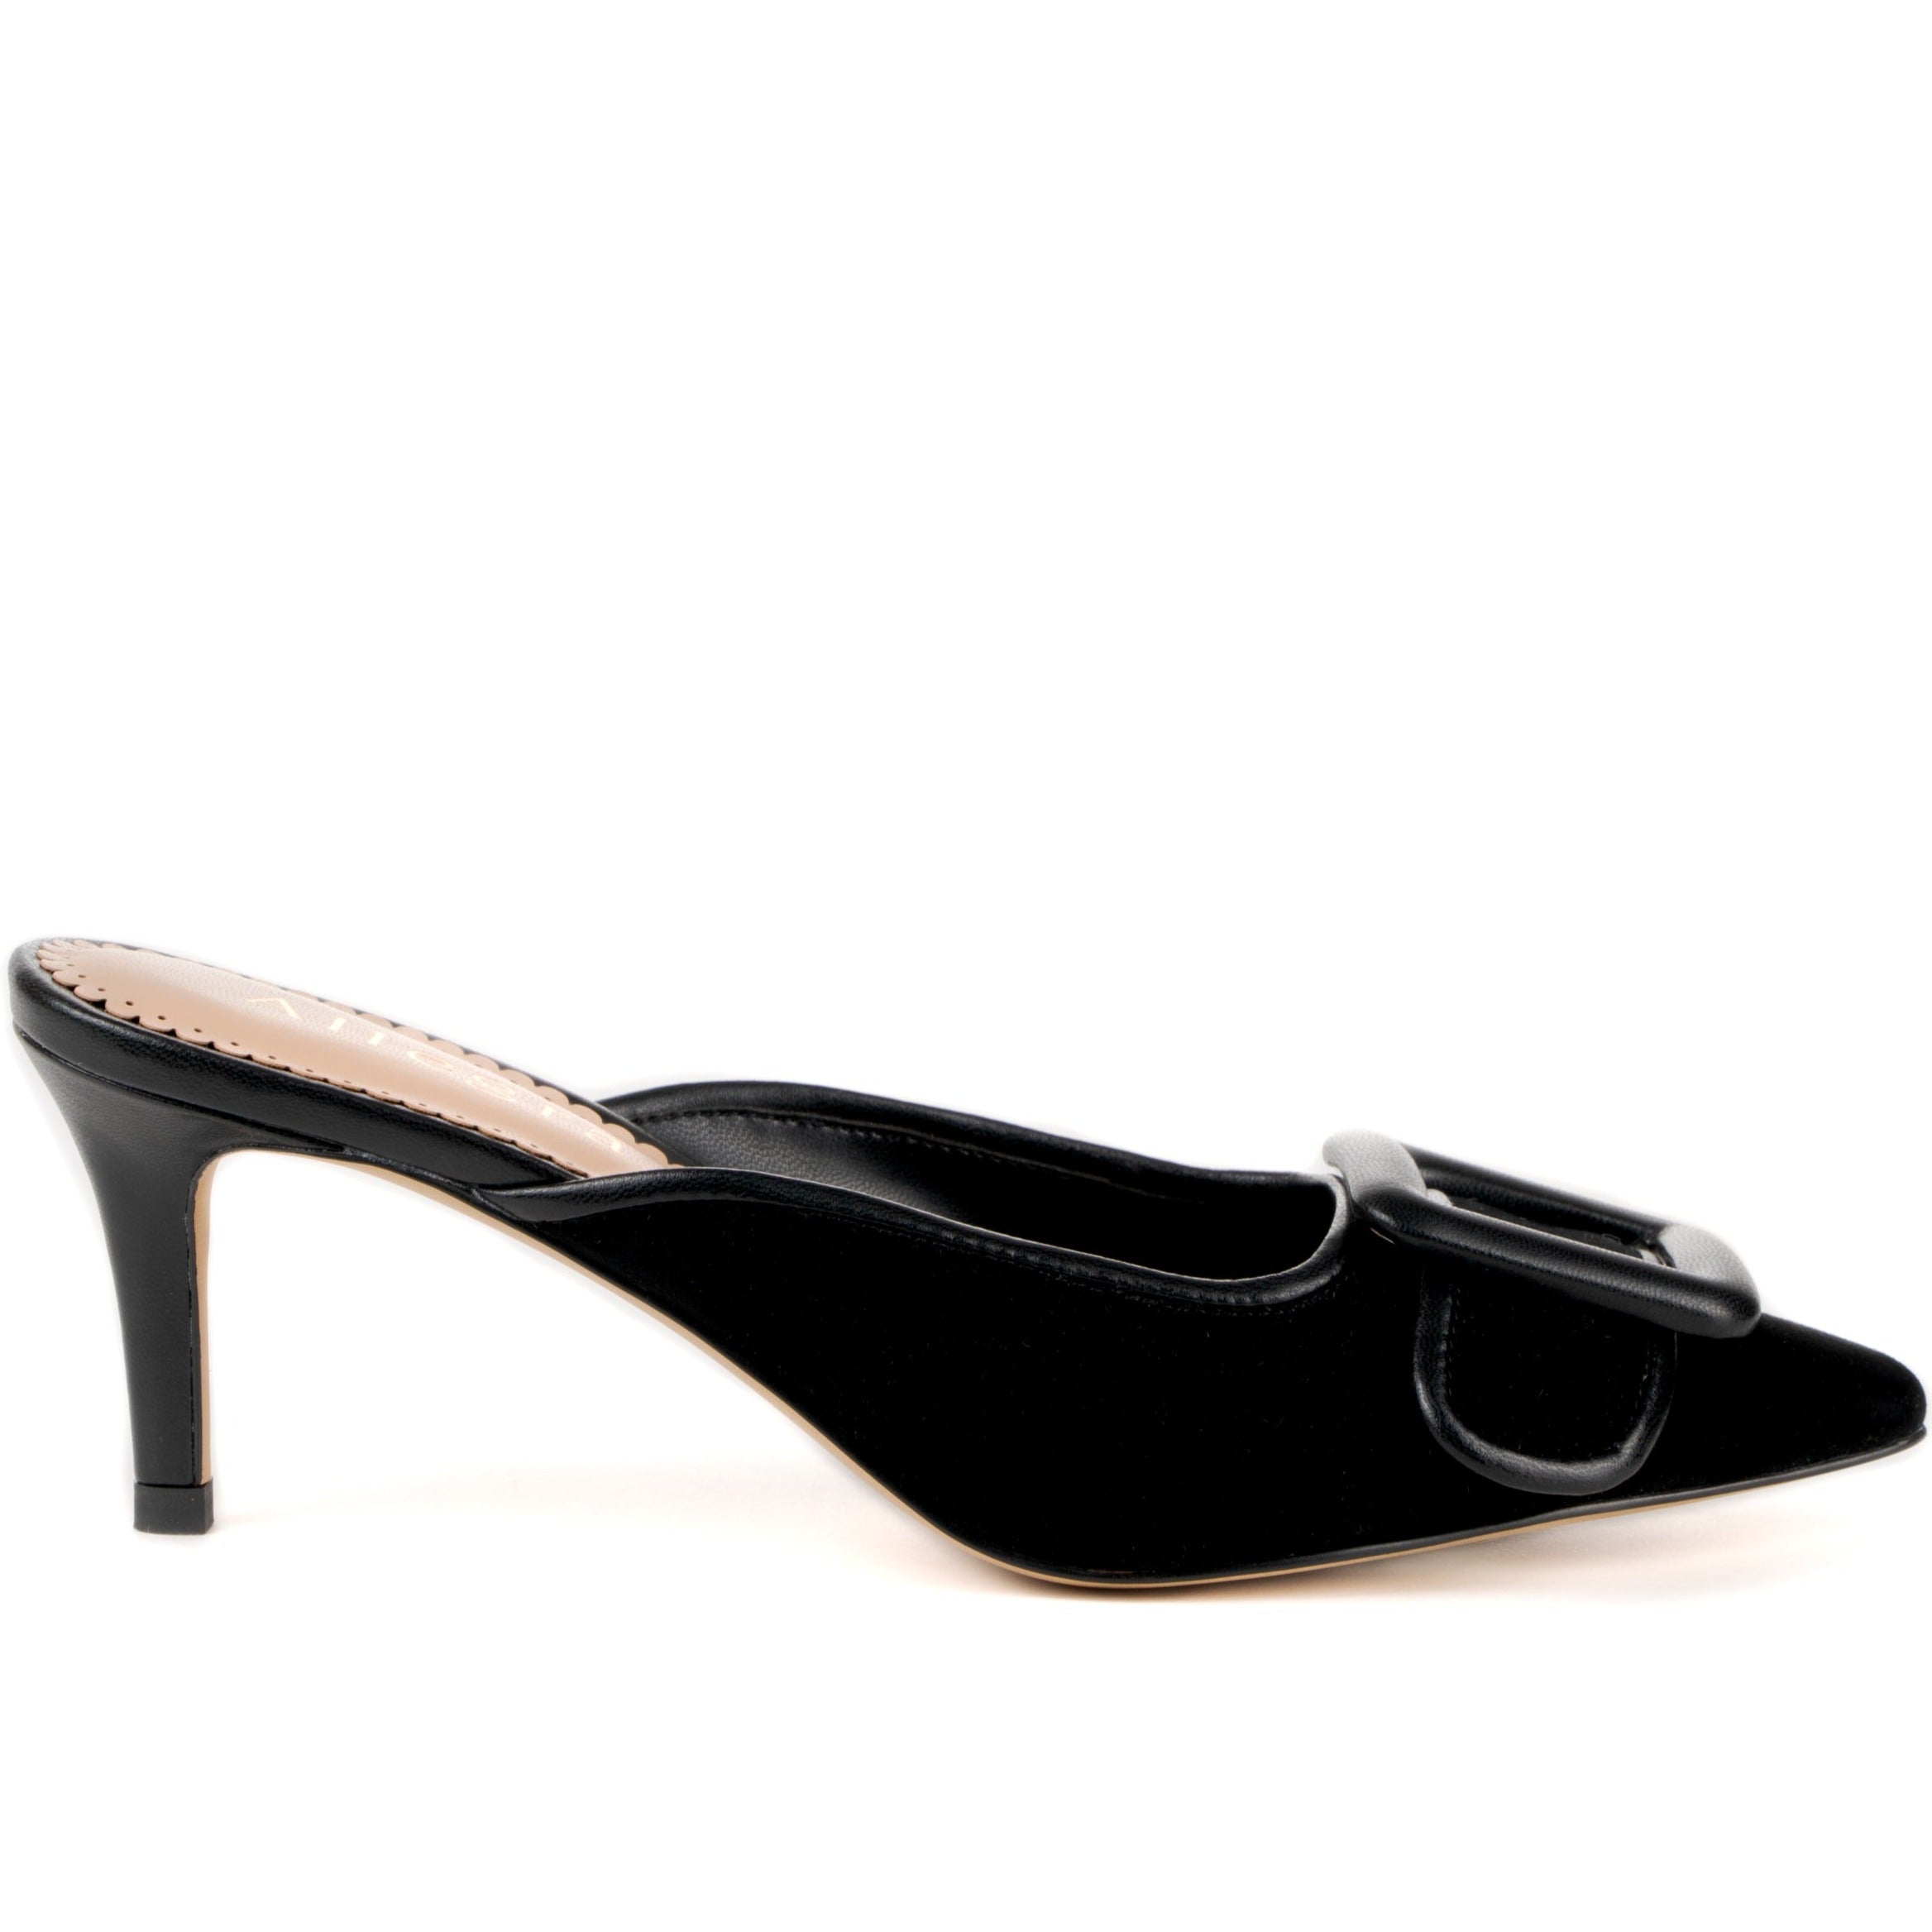 Black mule sandal heels with buckle design upper -  side view 